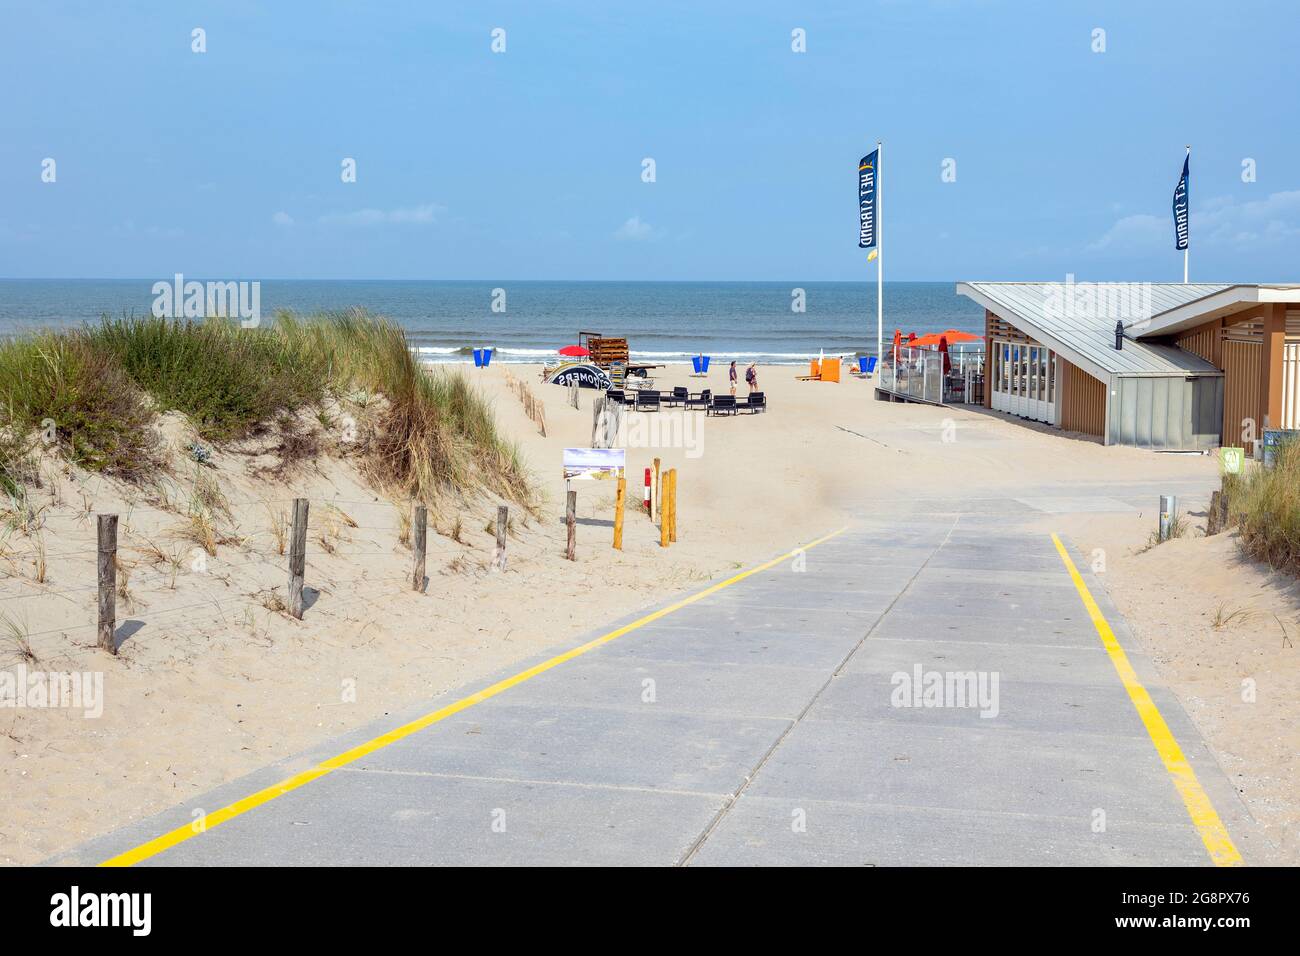 Verano a lo largo del Mar del Norte: Vista atractiva de la playa en Katwijk, Holanda del Sur, Holanda, un popular complejo costero. Foto de stock